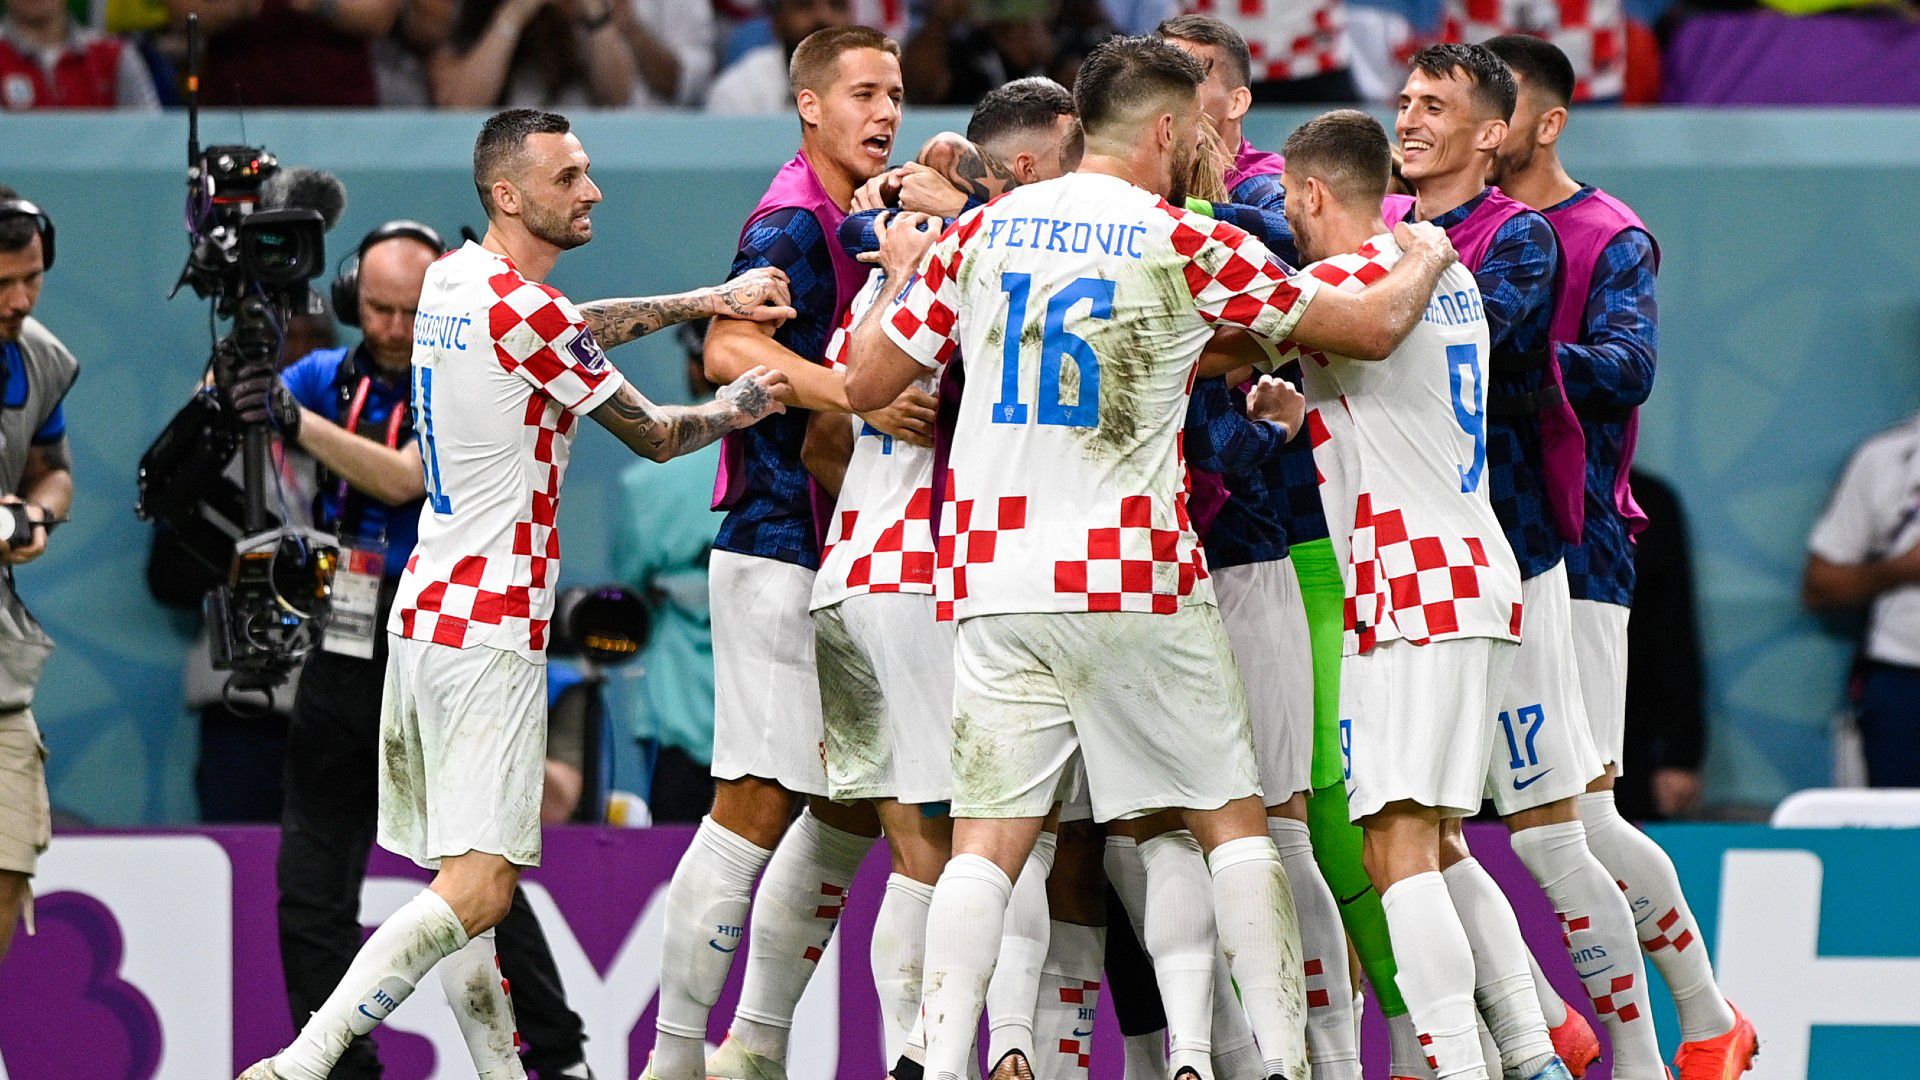 Futballdráma! Livakovic volt a hős, Horvátország tizenegyesekkel jutott tovább a Japán elleni nyolcaddöntőben